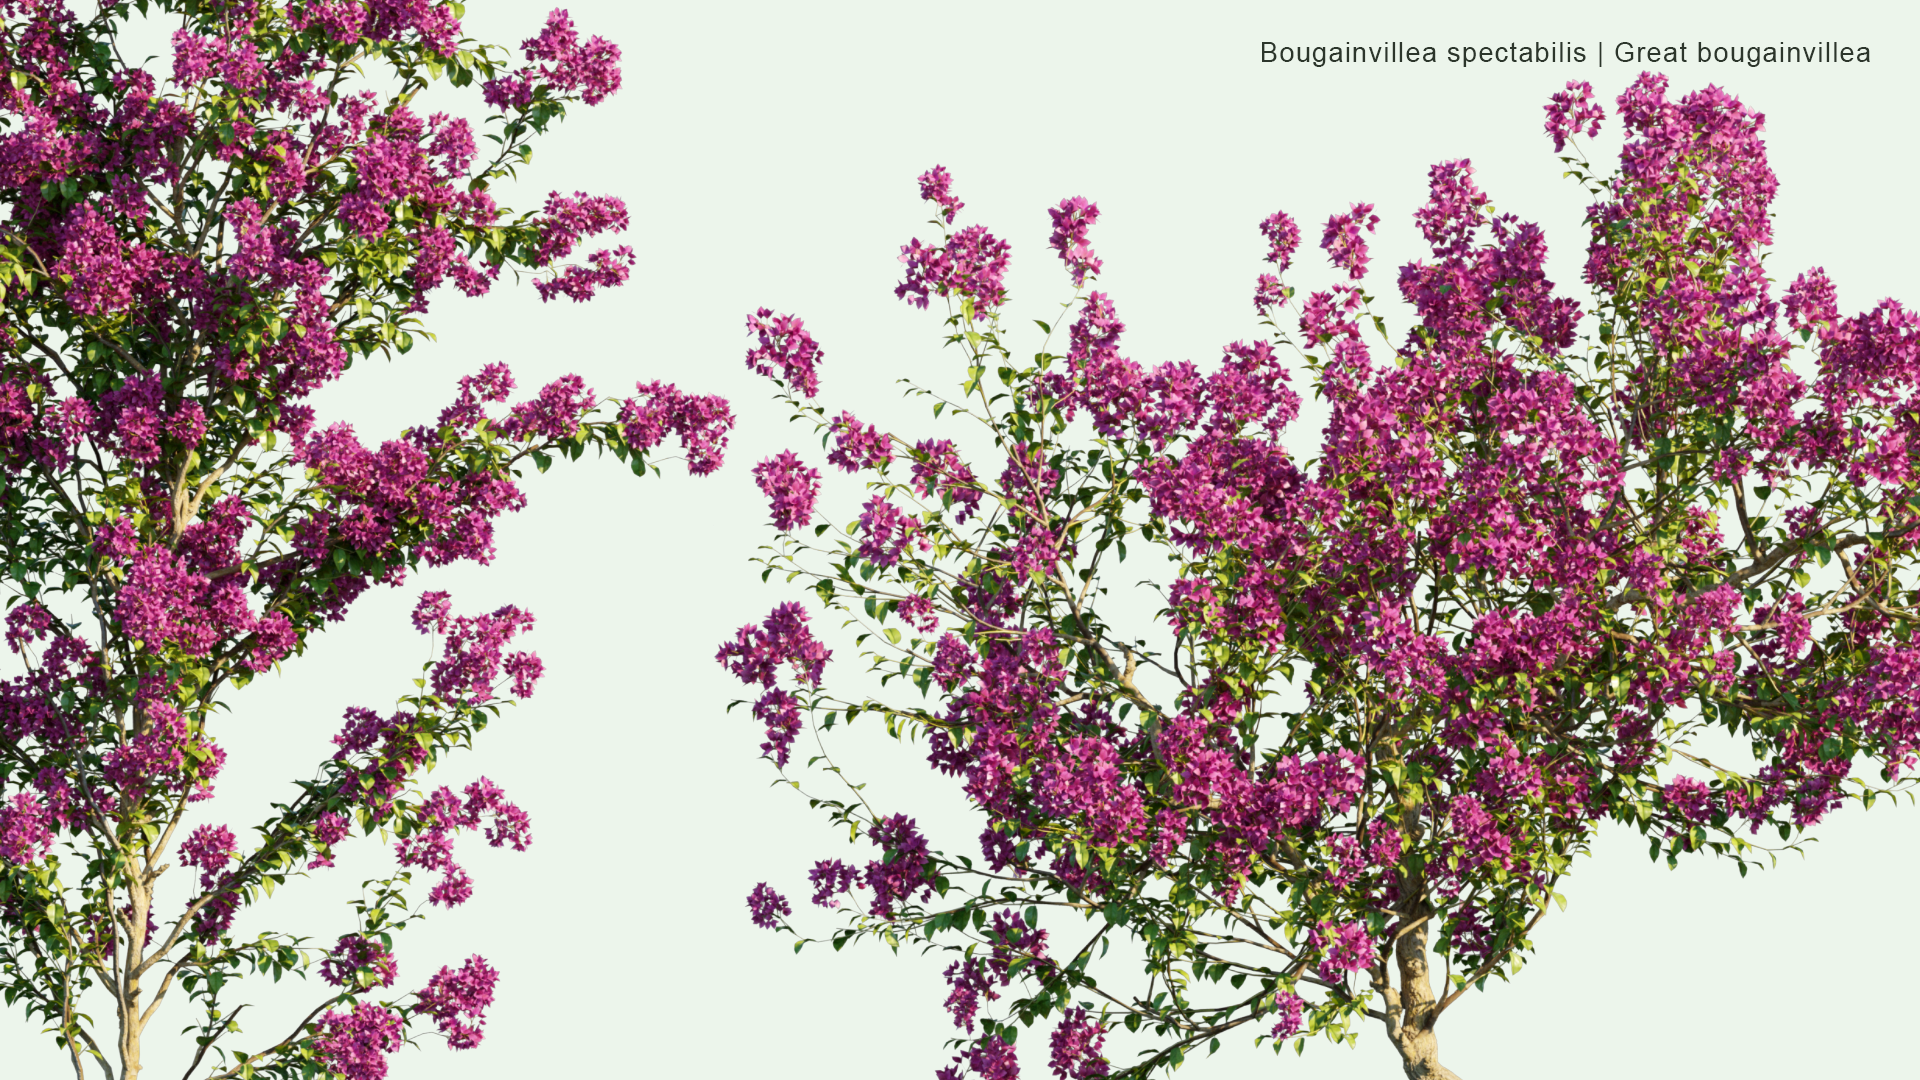 2D Bougainvillea Spectabilis - Great Bougainvillea